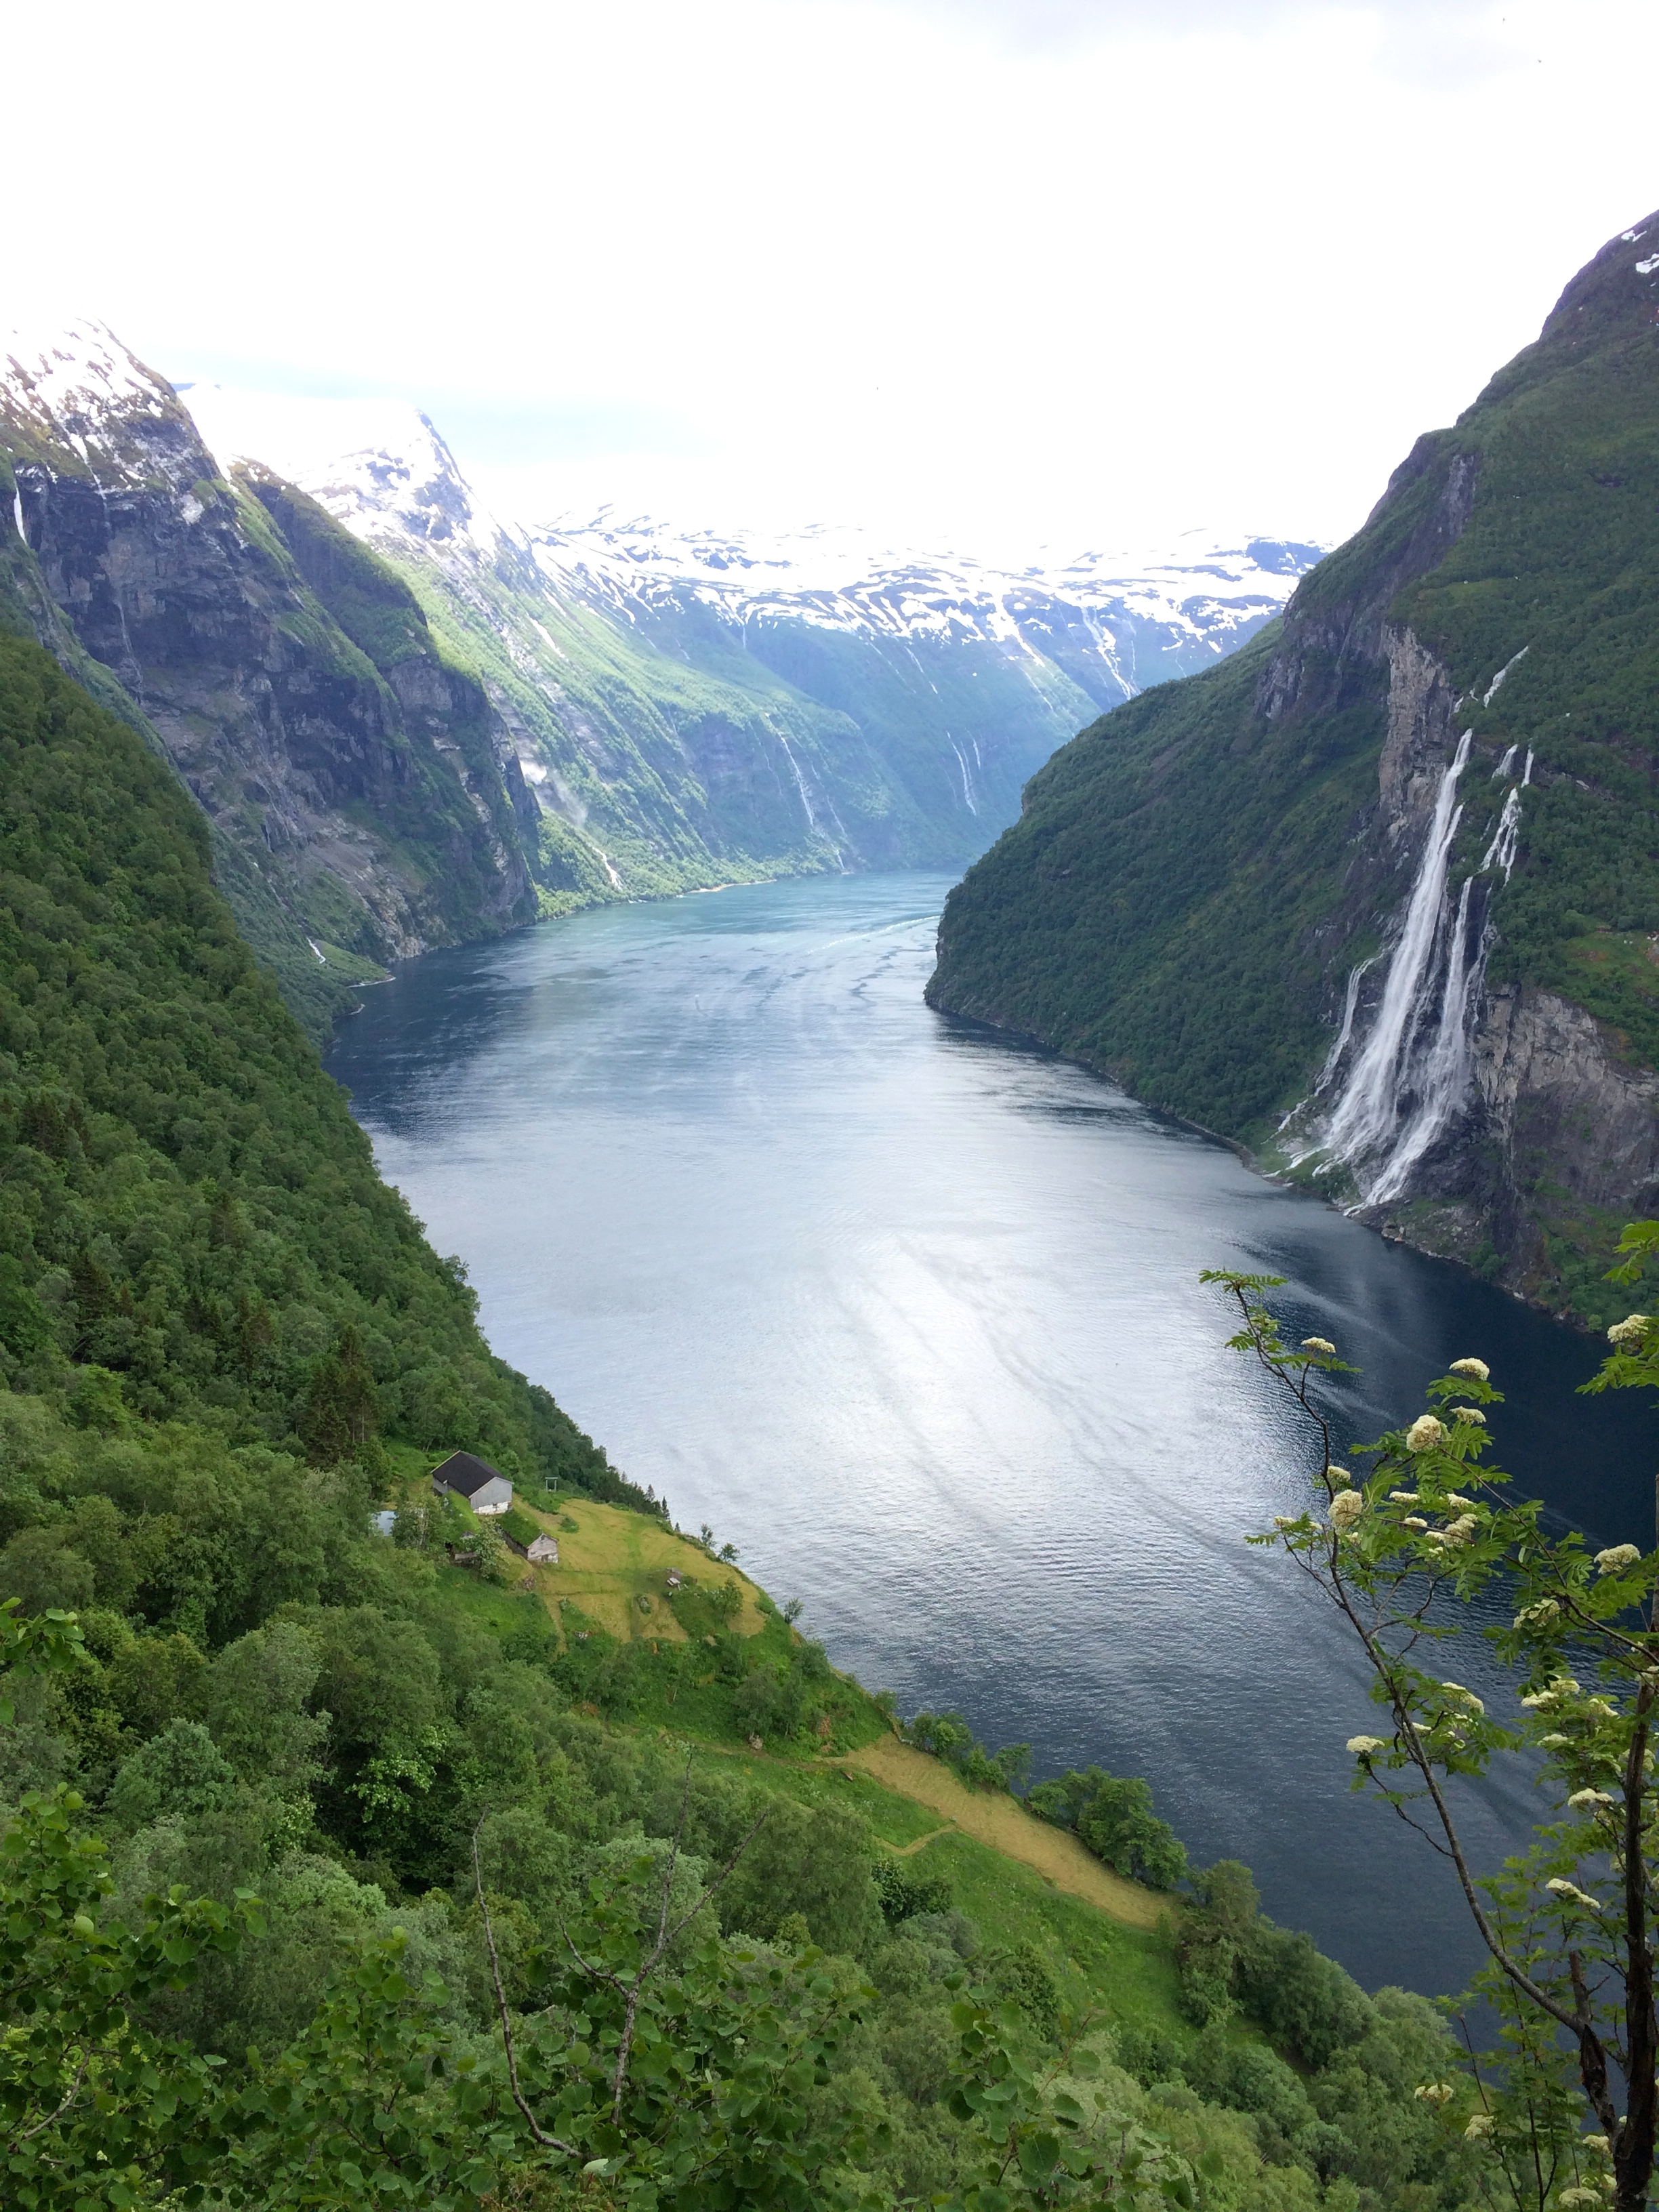 norway fjord hiking tours